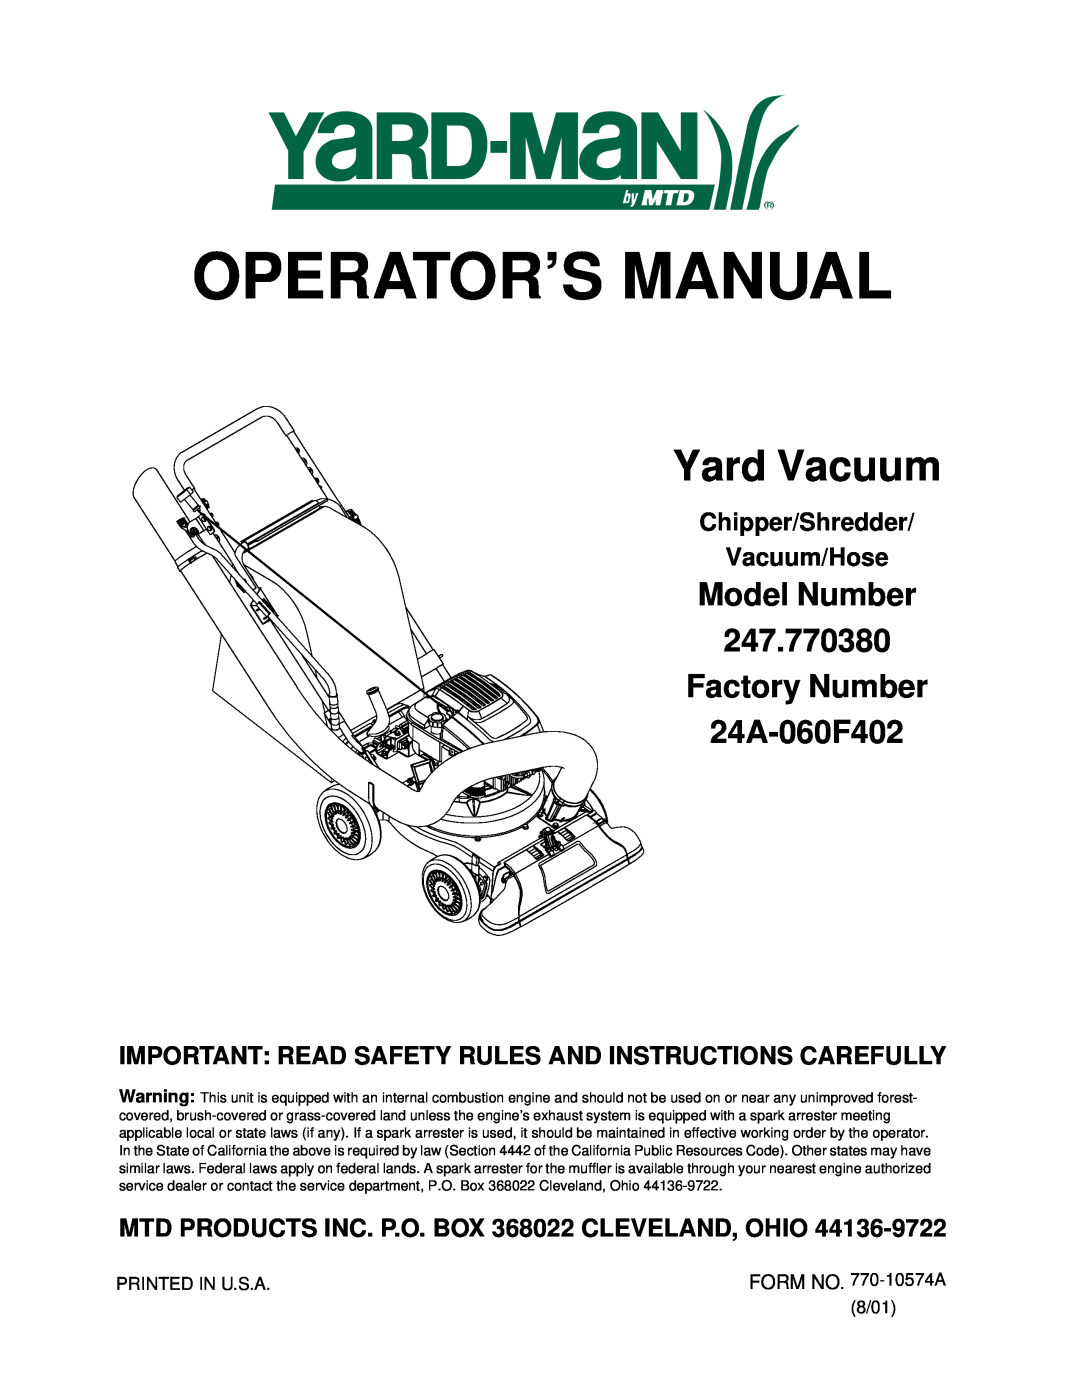 Yard-Man manual Operator’S Manual, Yard Vacuum, Model Number 247.770380 Factory Number 24A-060F402 